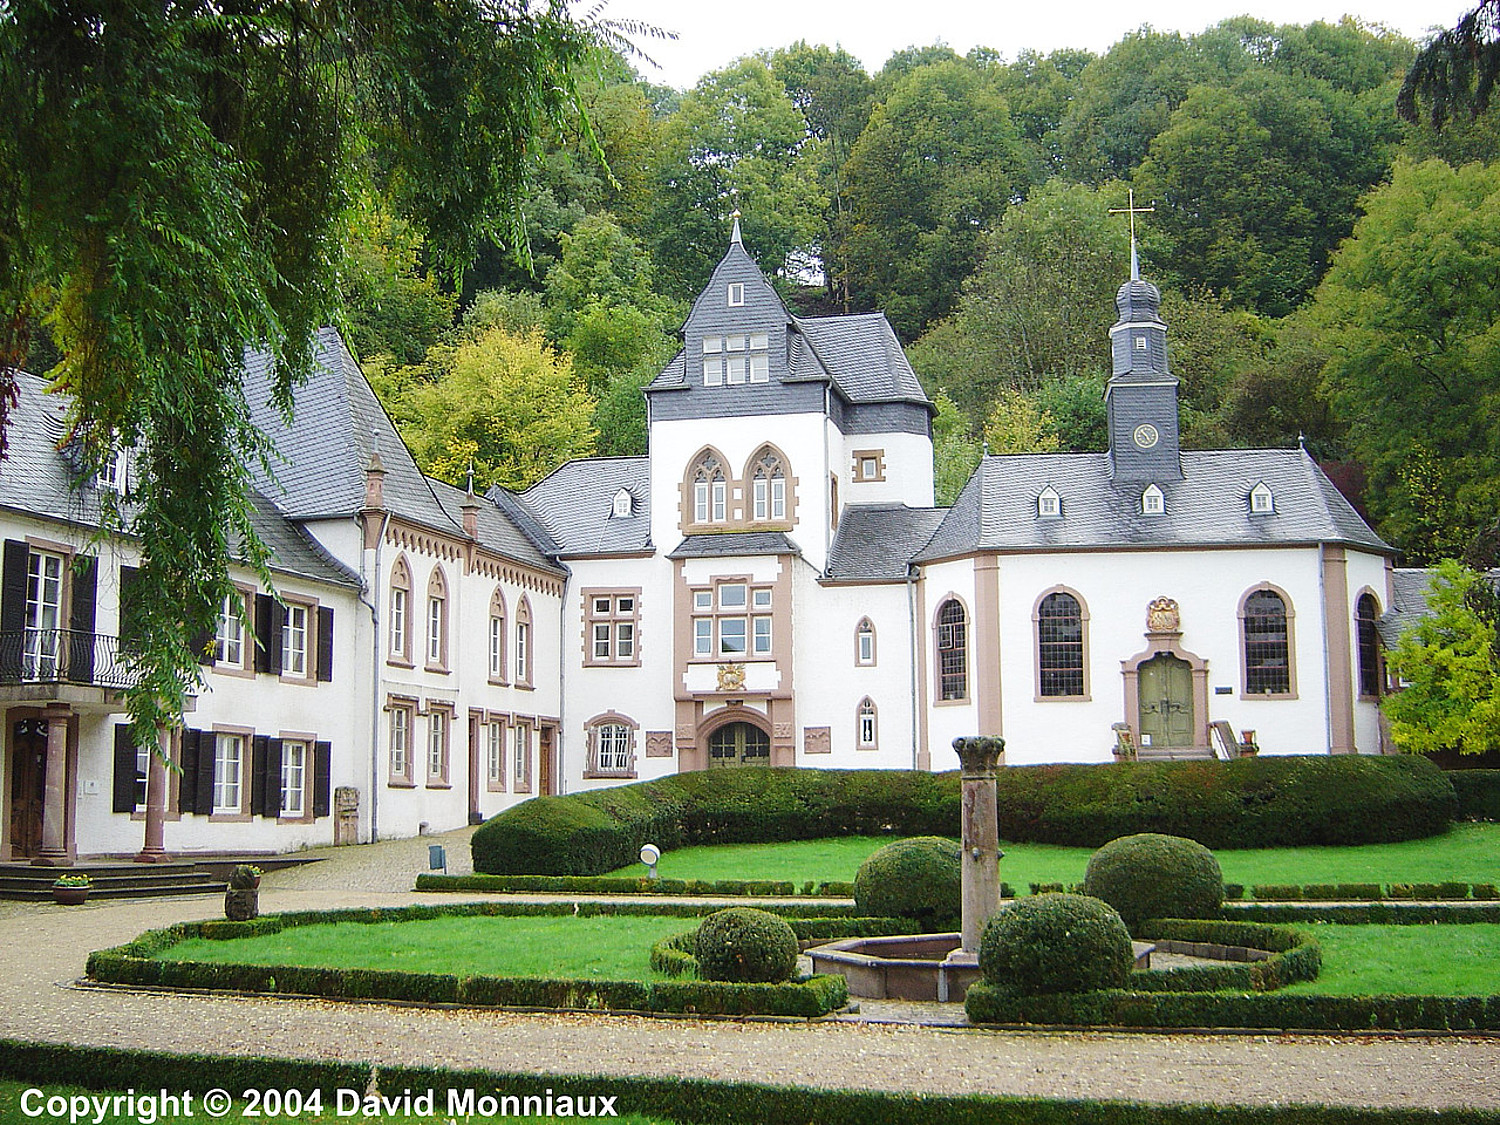 Dagstuhl Castle